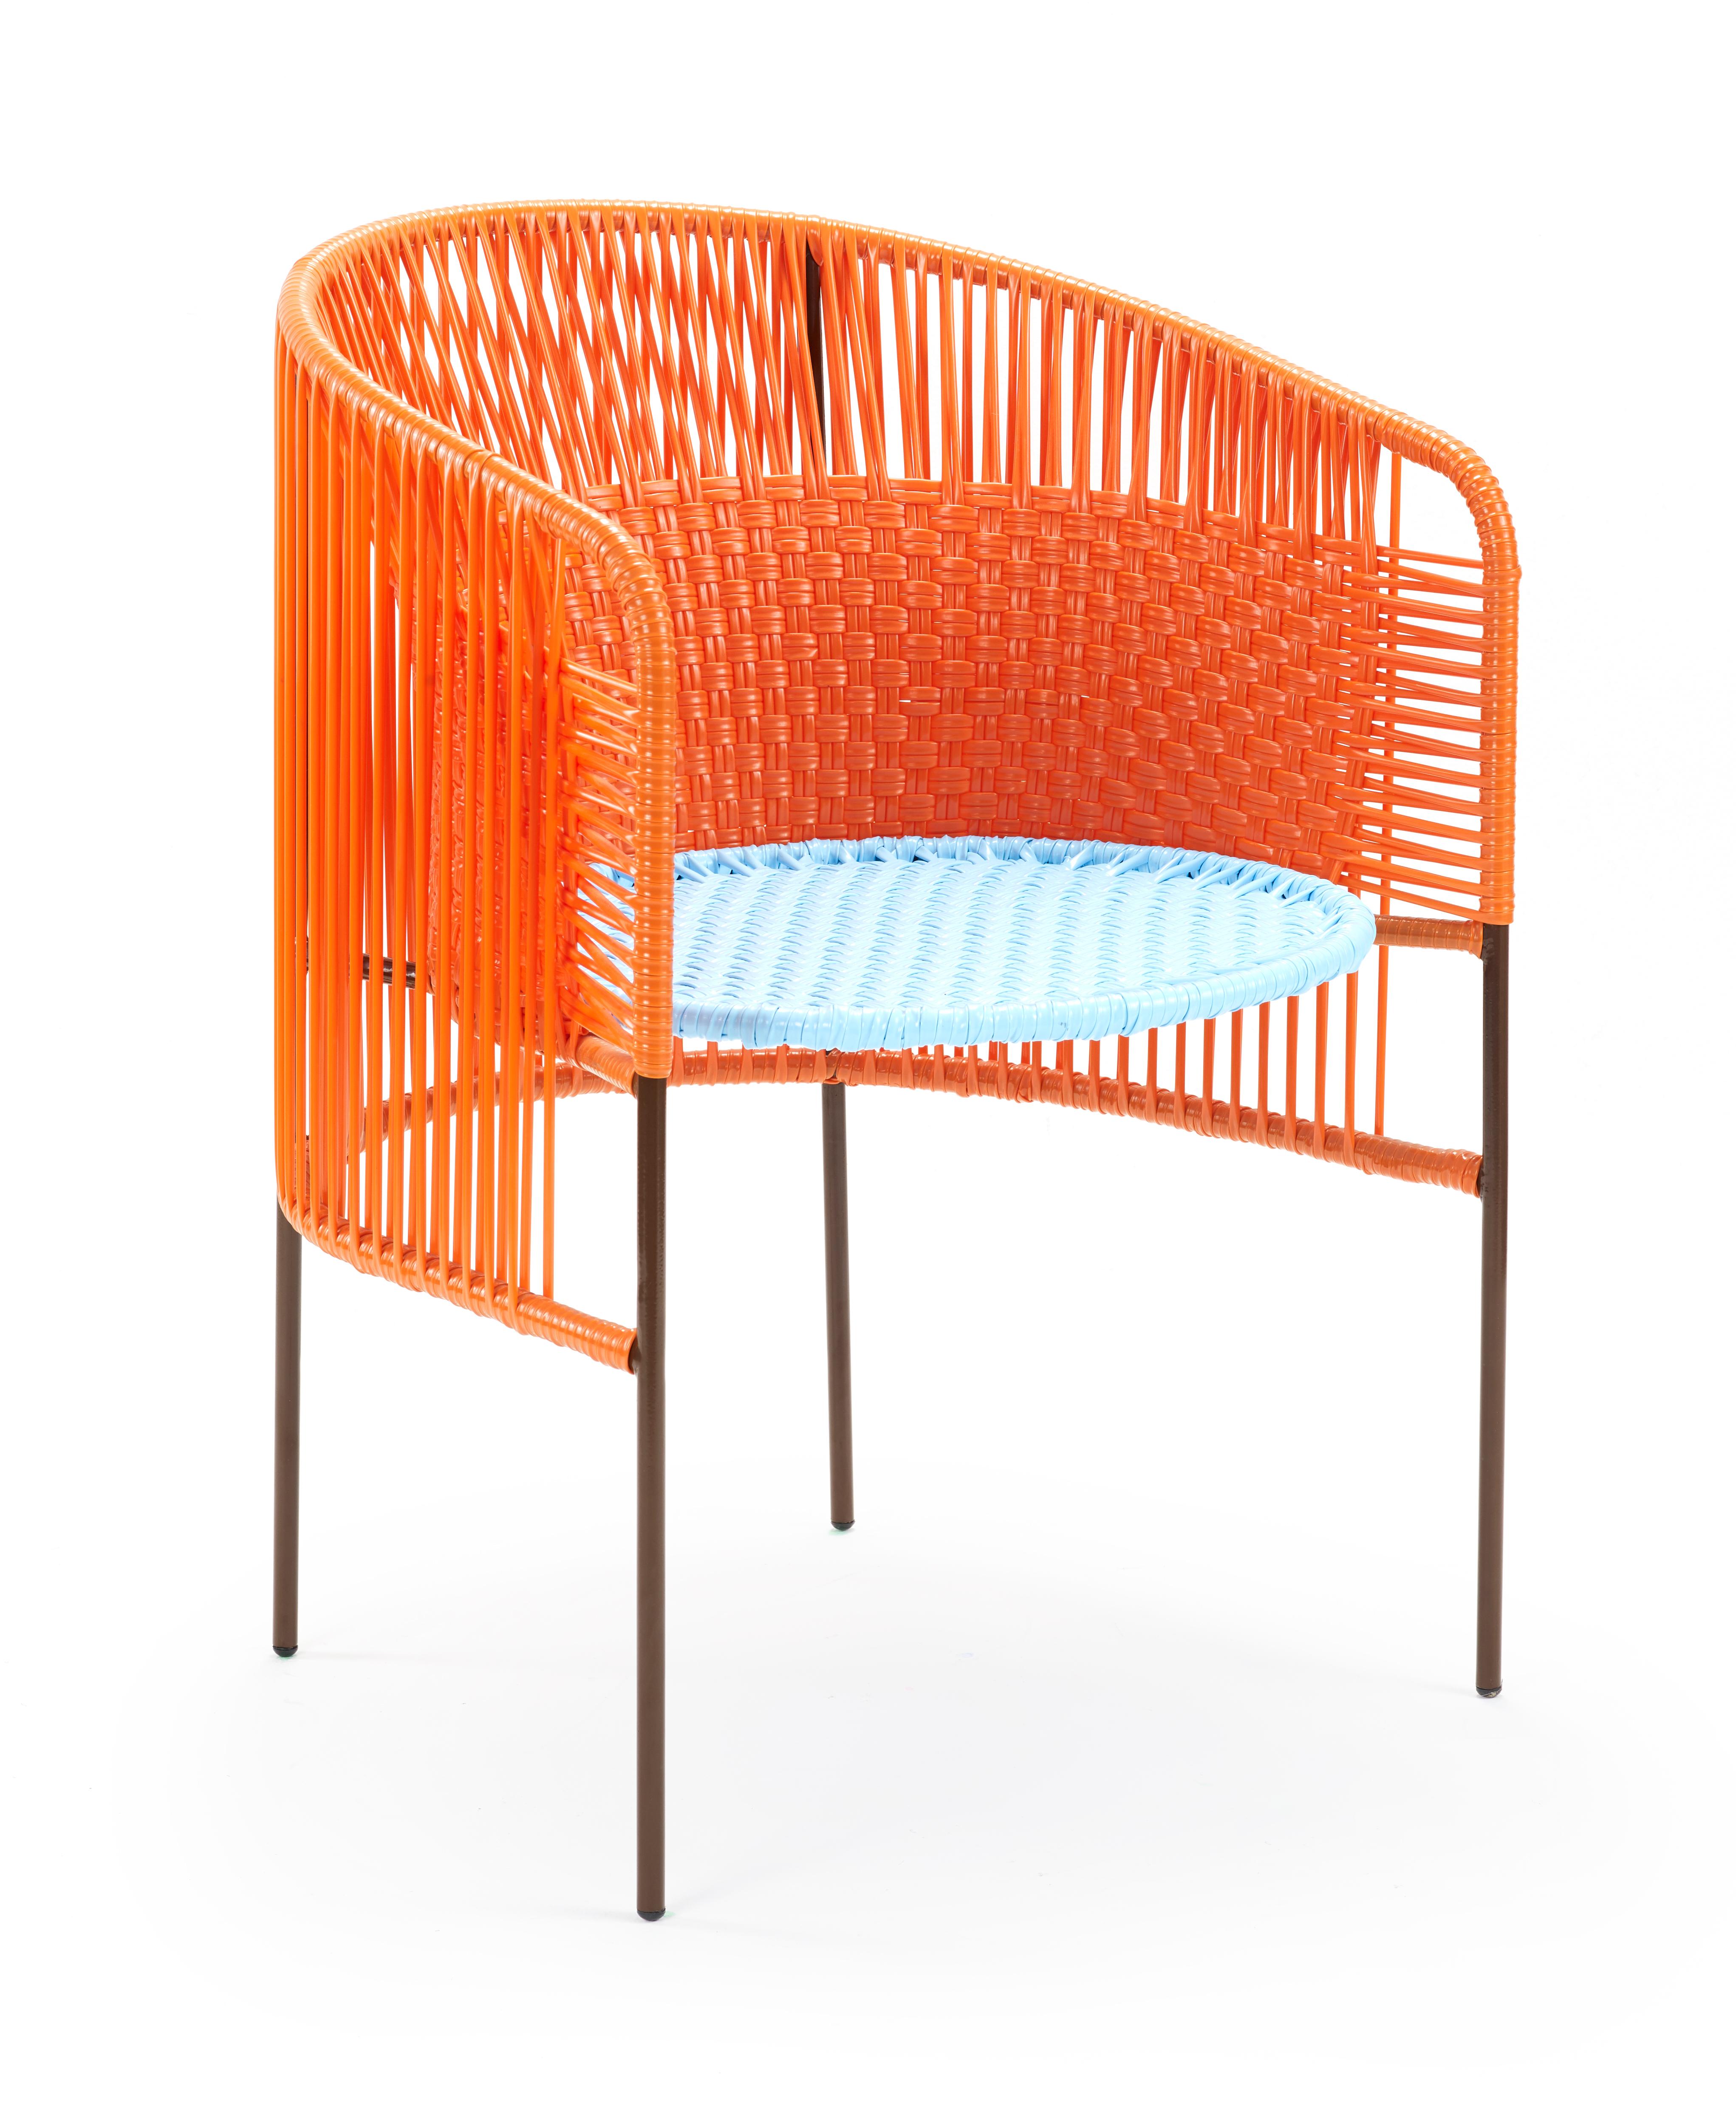 4er set orange mint caribe esszimmerstühle von Sebastian Herkner.
MATERIAL: verzinktes und pulverbeschichtetes Stahlrohr. PVC-Schnüre werden aus recyceltem Kunststoff hergestellt.
Technik: Hergestellt aus recyceltem Kunststoff und gewebt von